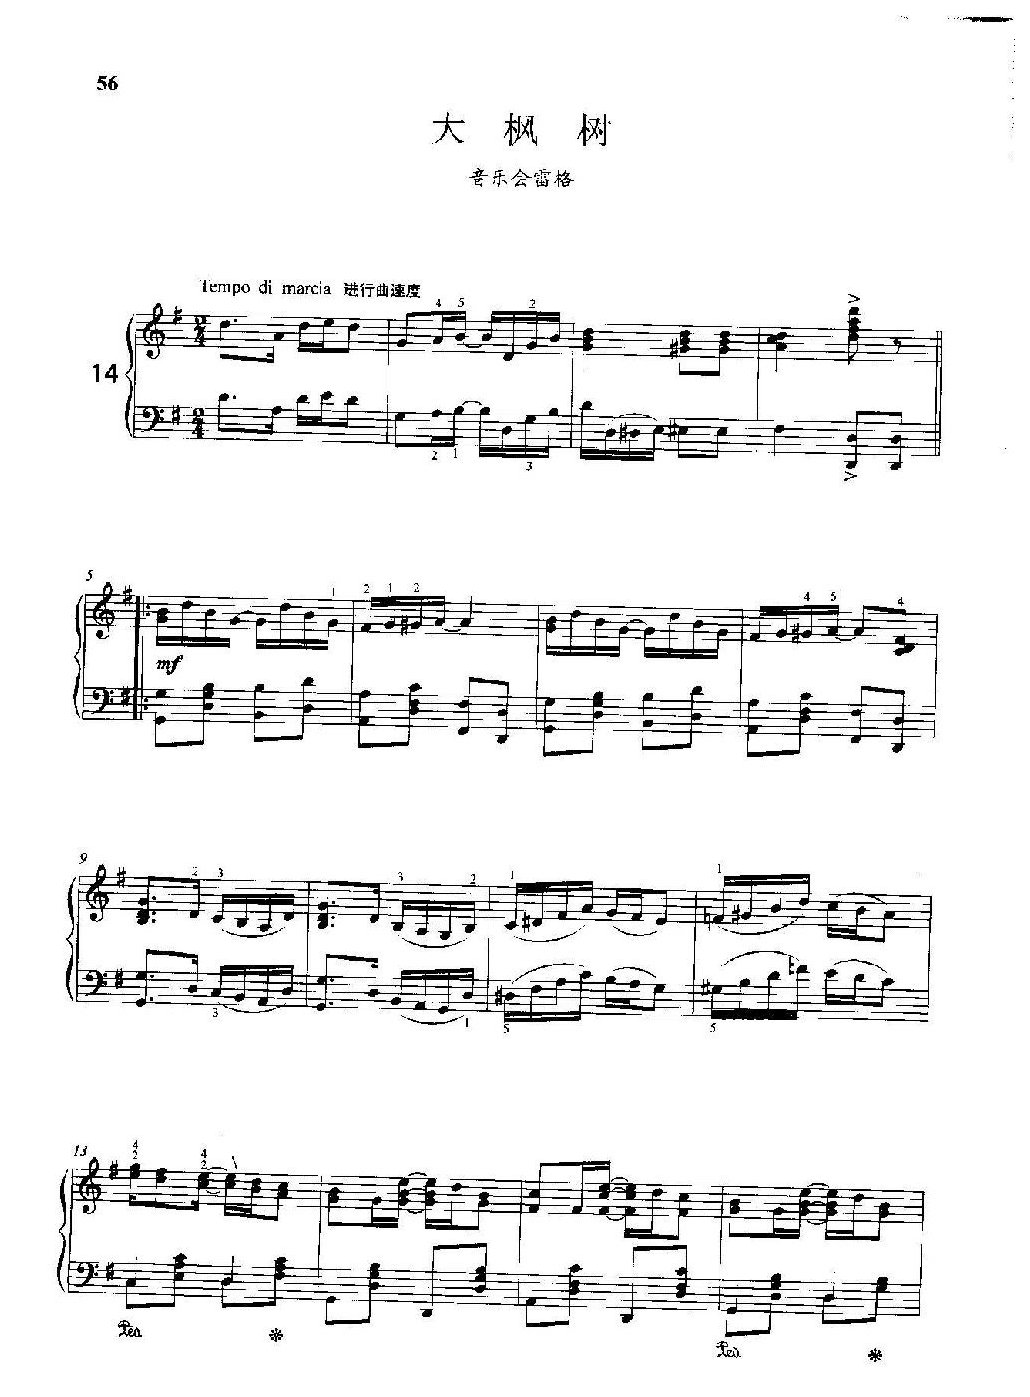 雷格泰姆钢琴乐谱《大枫树》雷格泰姆之王斯科特·乔普林